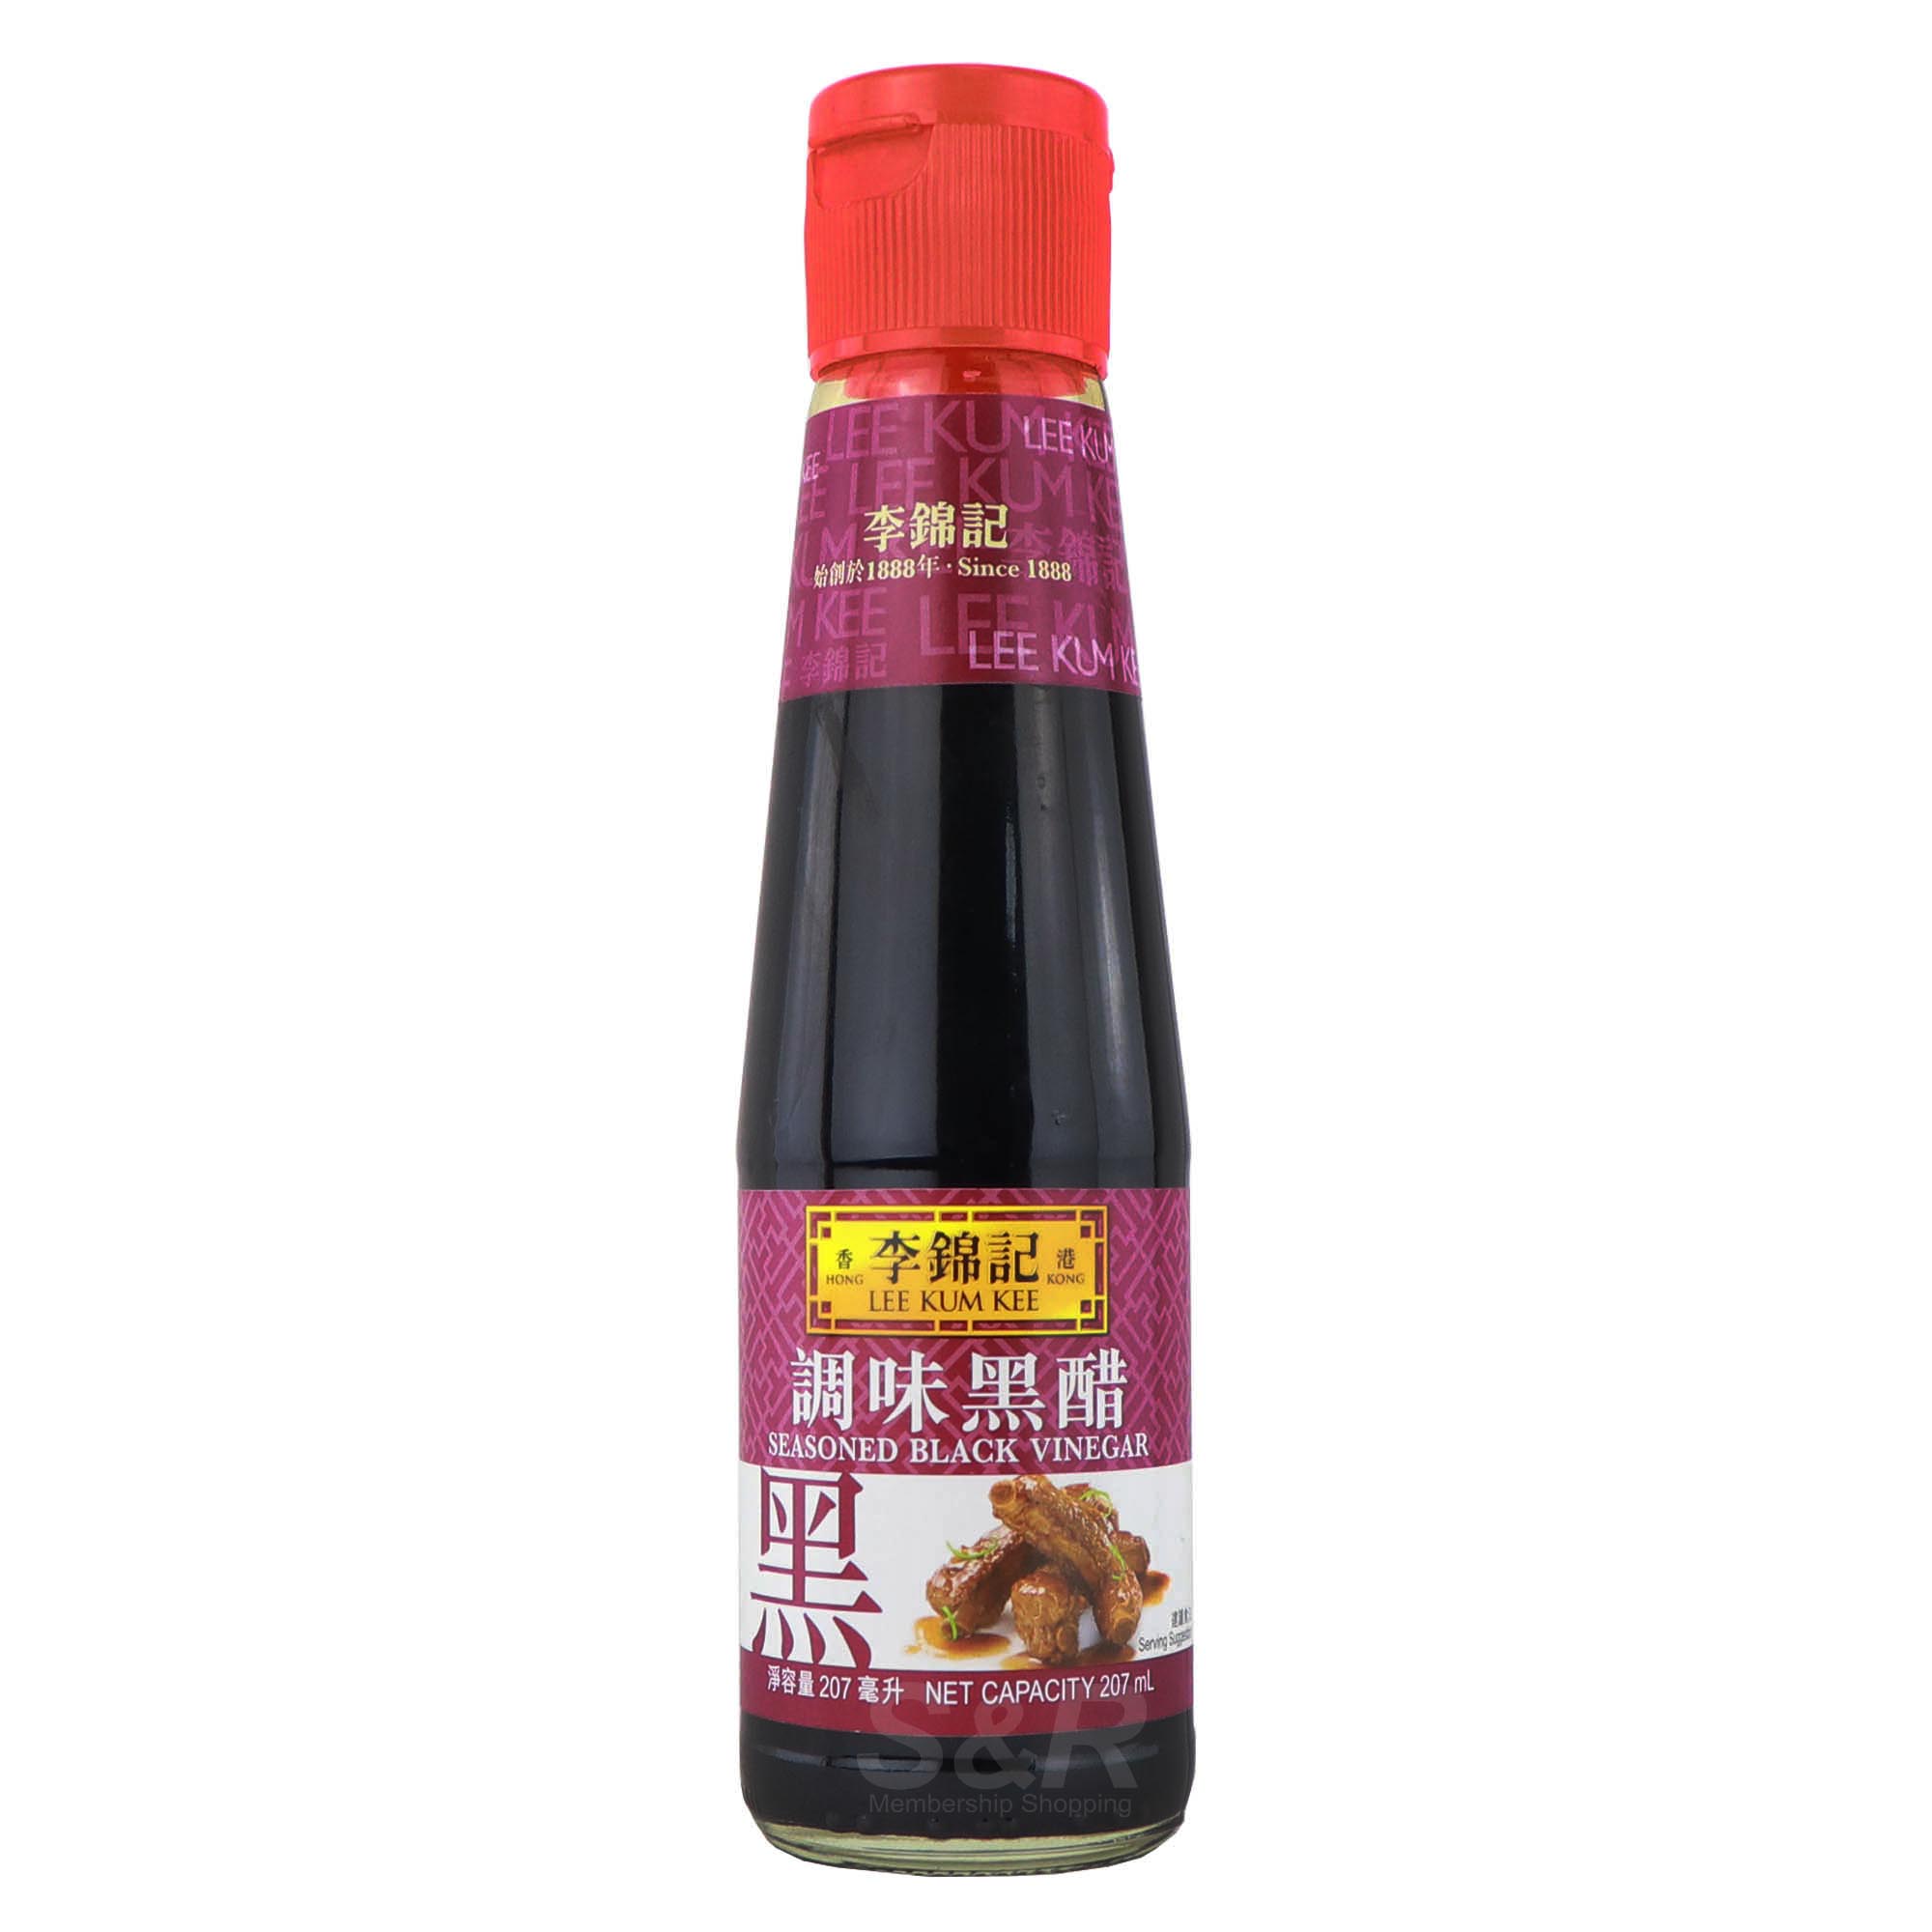 Lee Kum Kee Seasoned Black Vinegar 207mL